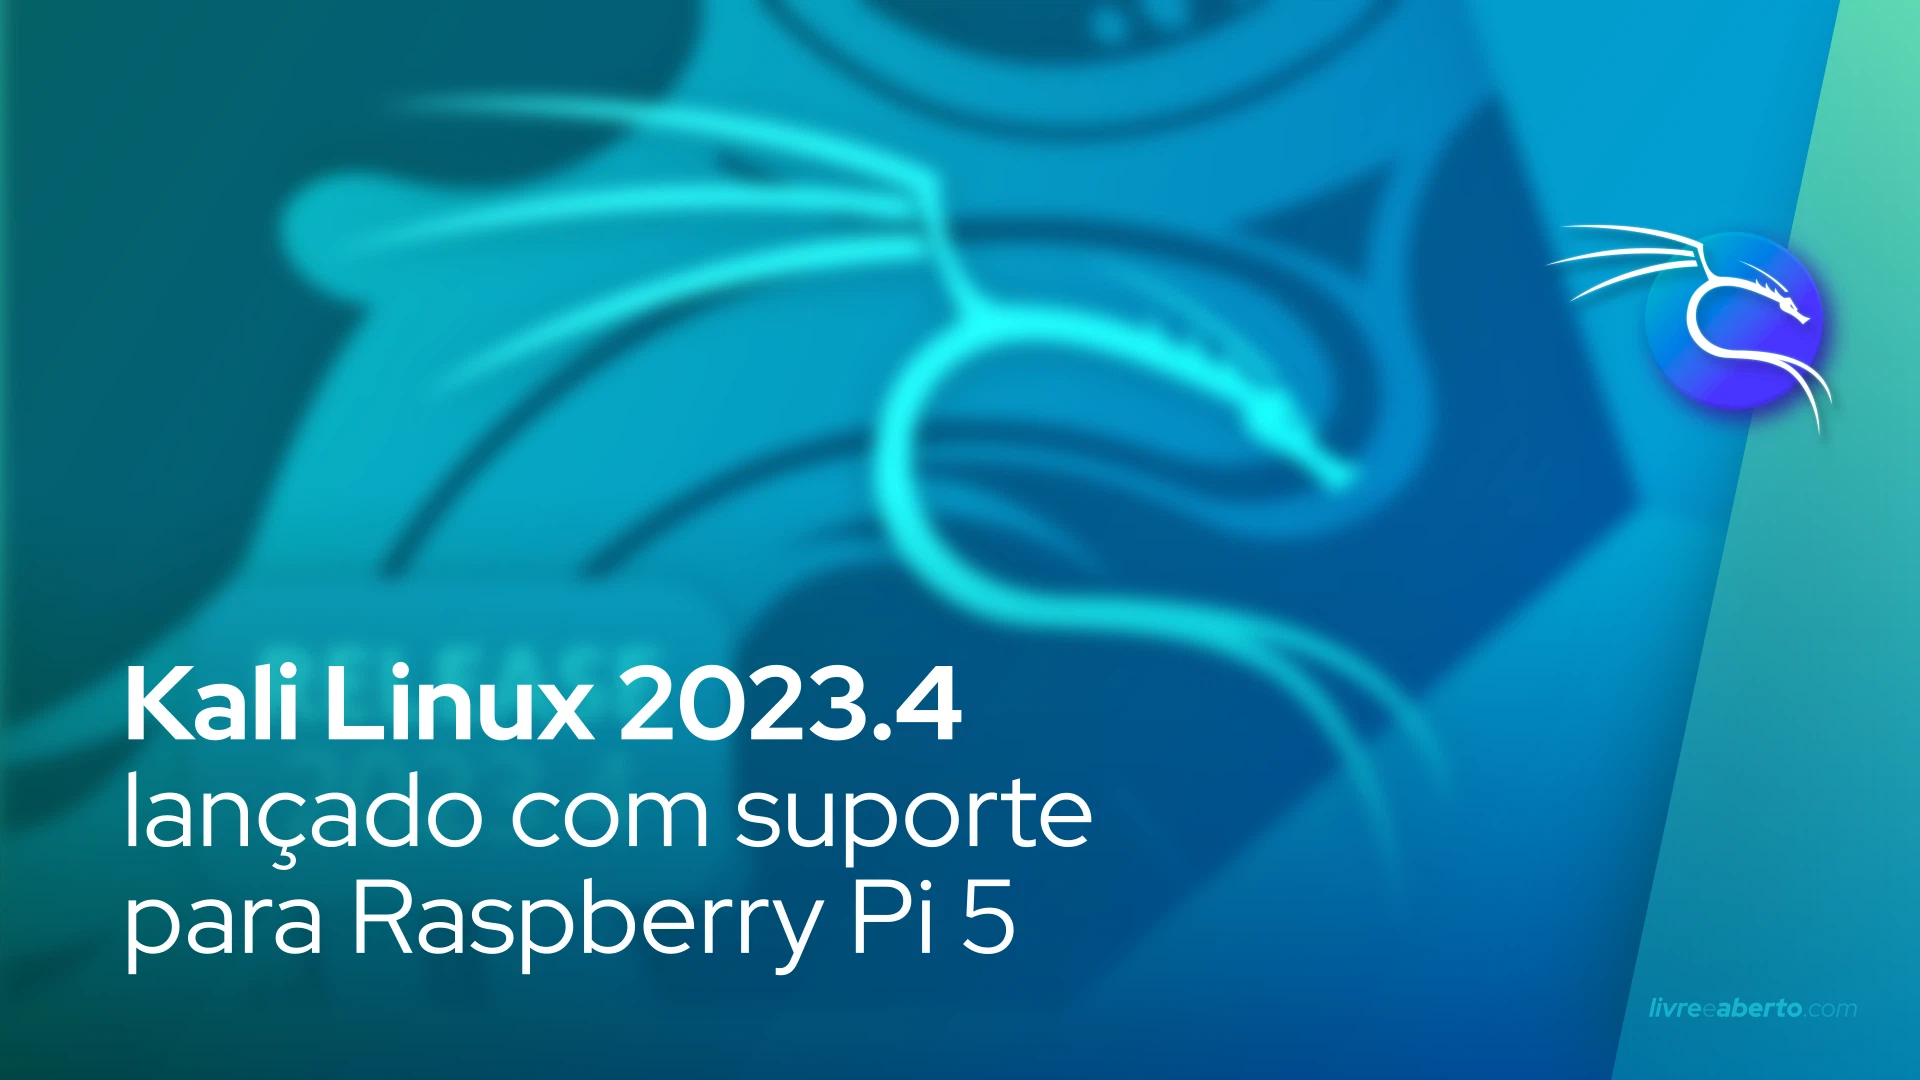 Kali Linux 2023.4 lançado com suporte para Raspberry Pi 5